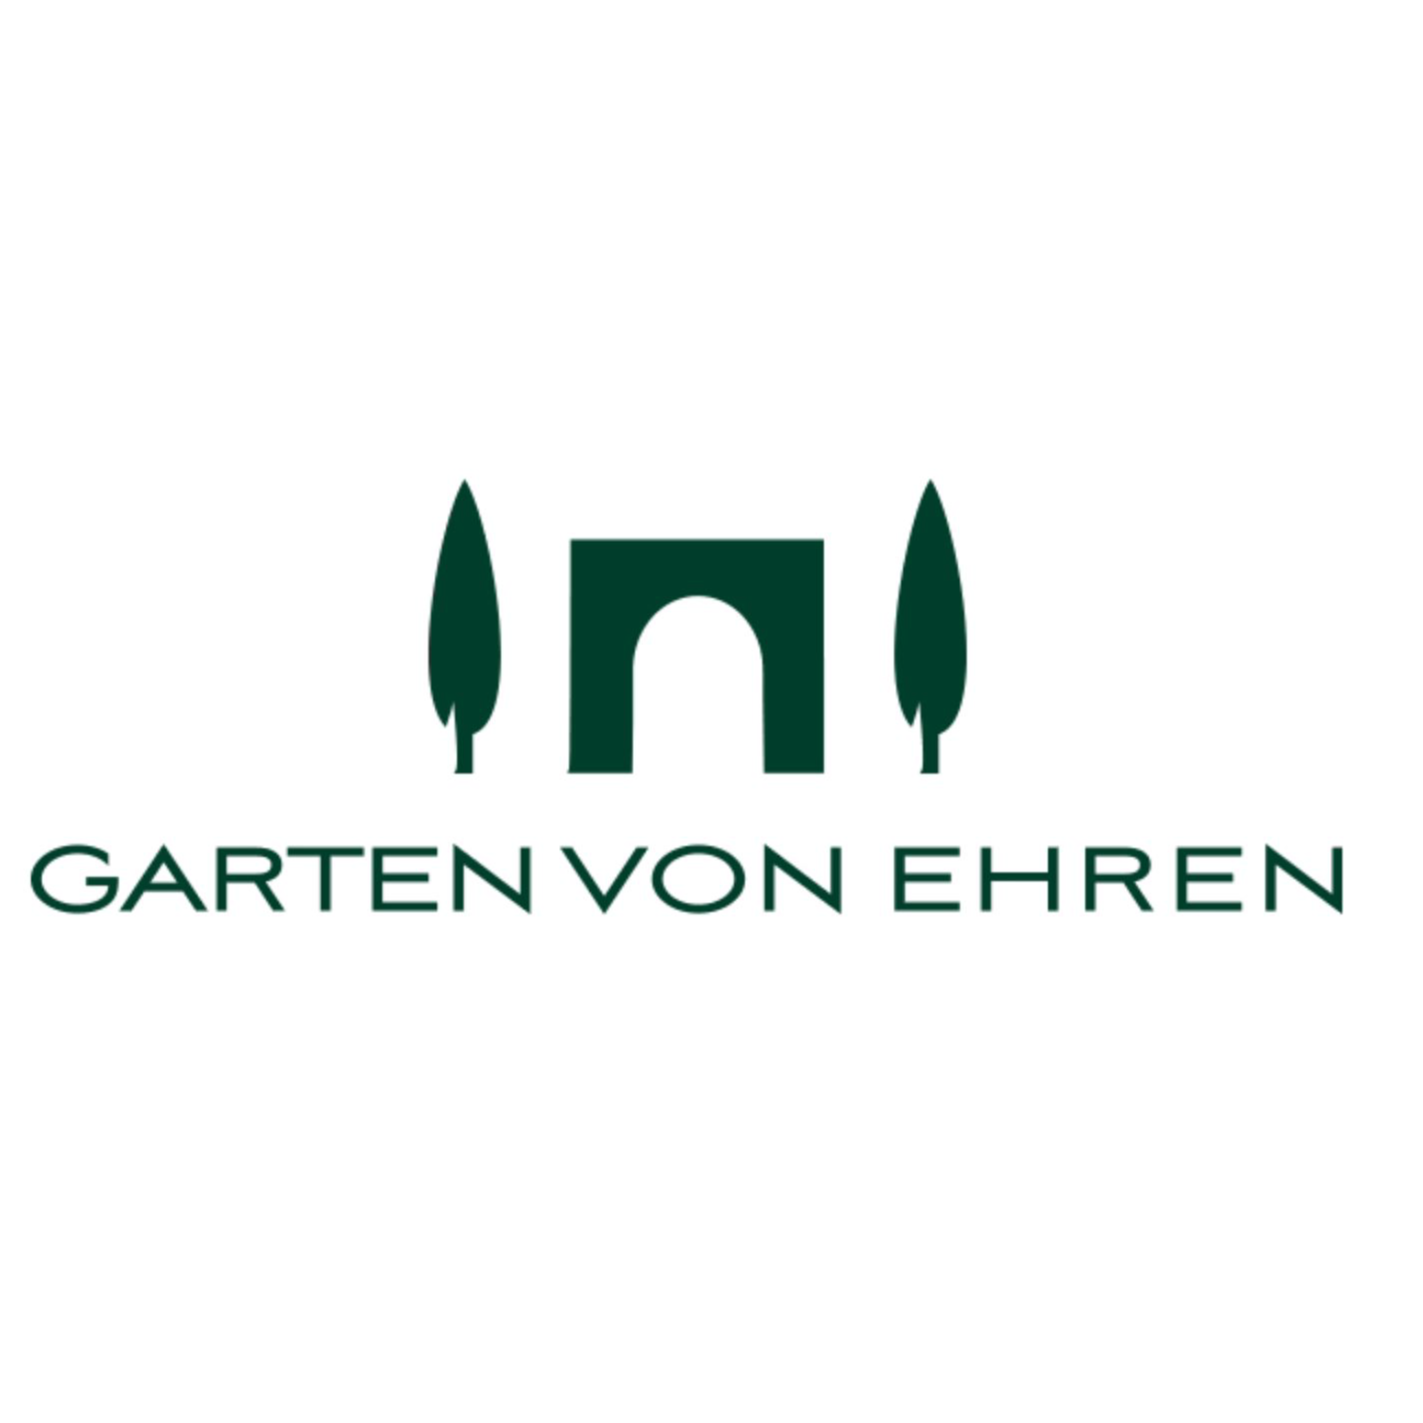 Johs. von Ehren Garten GmbH & Co.KG  